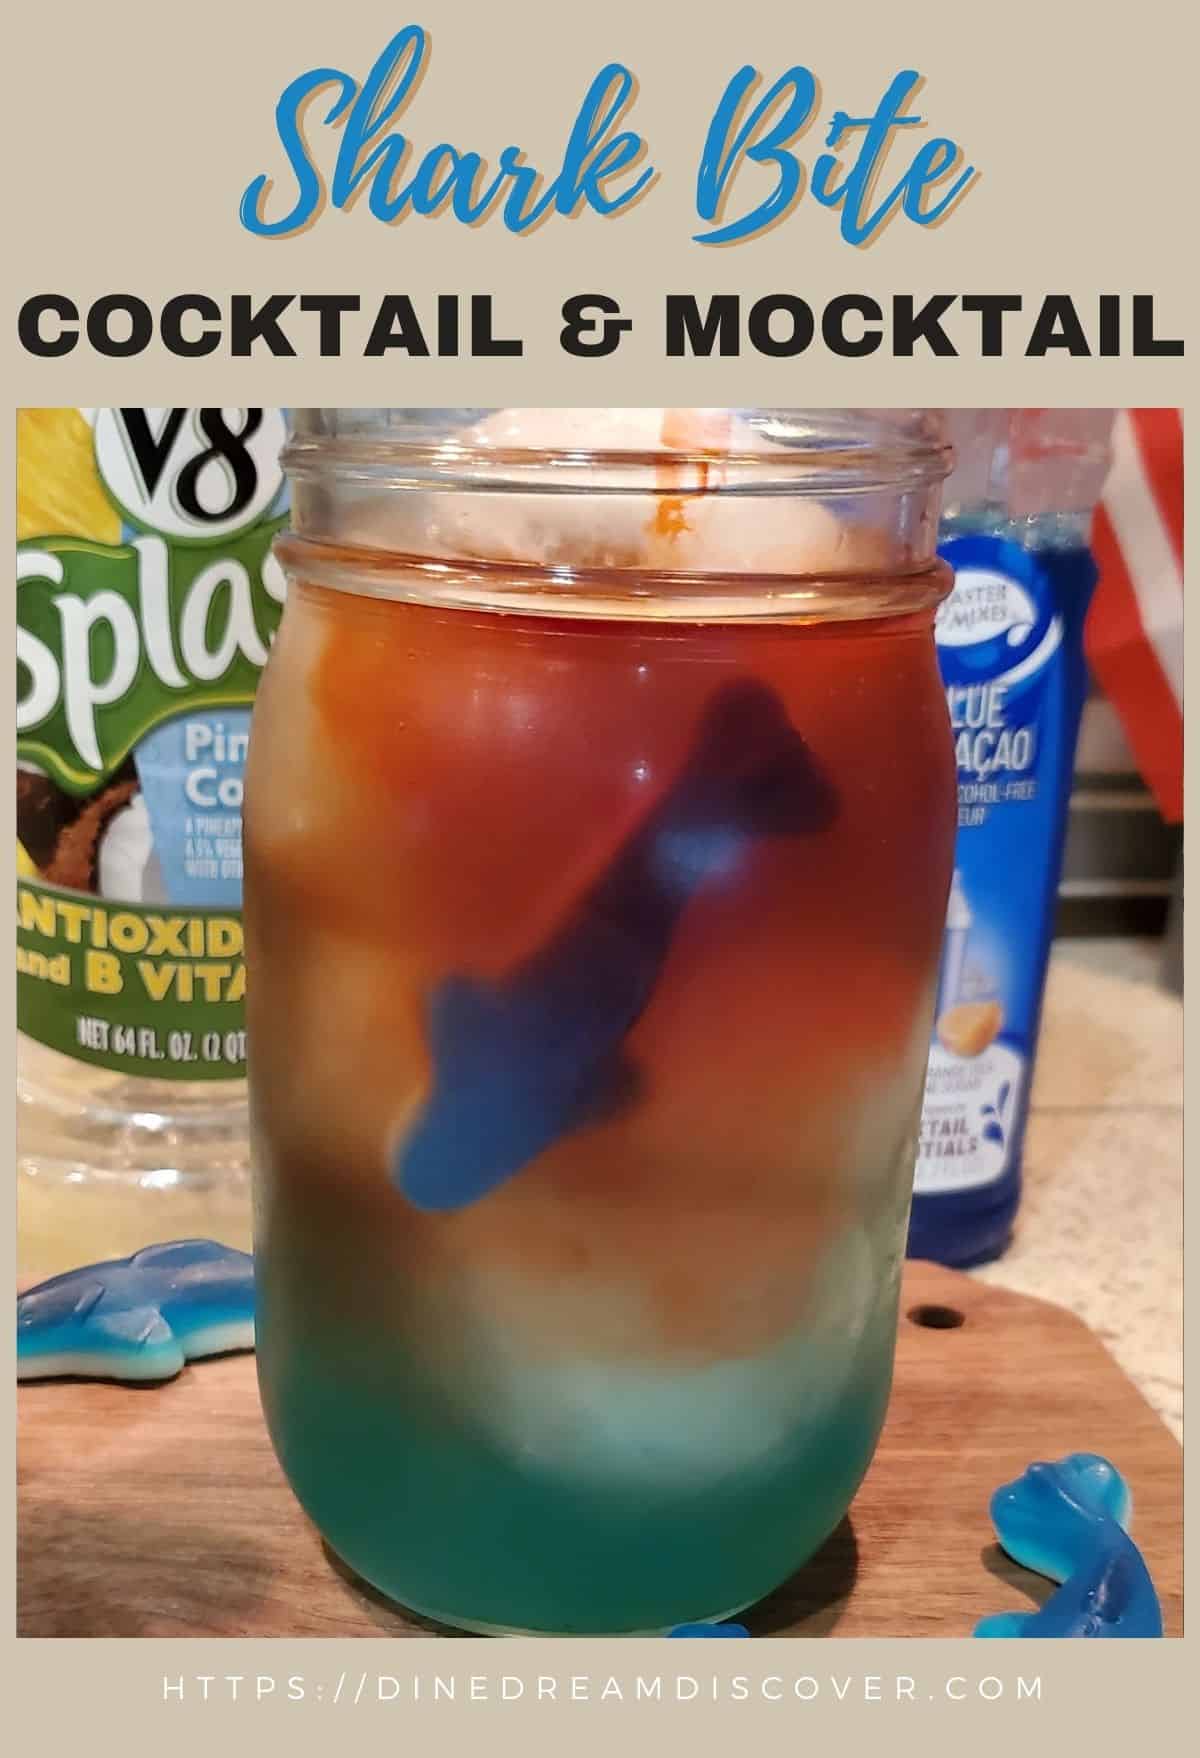 Shark Bite Cocktail 